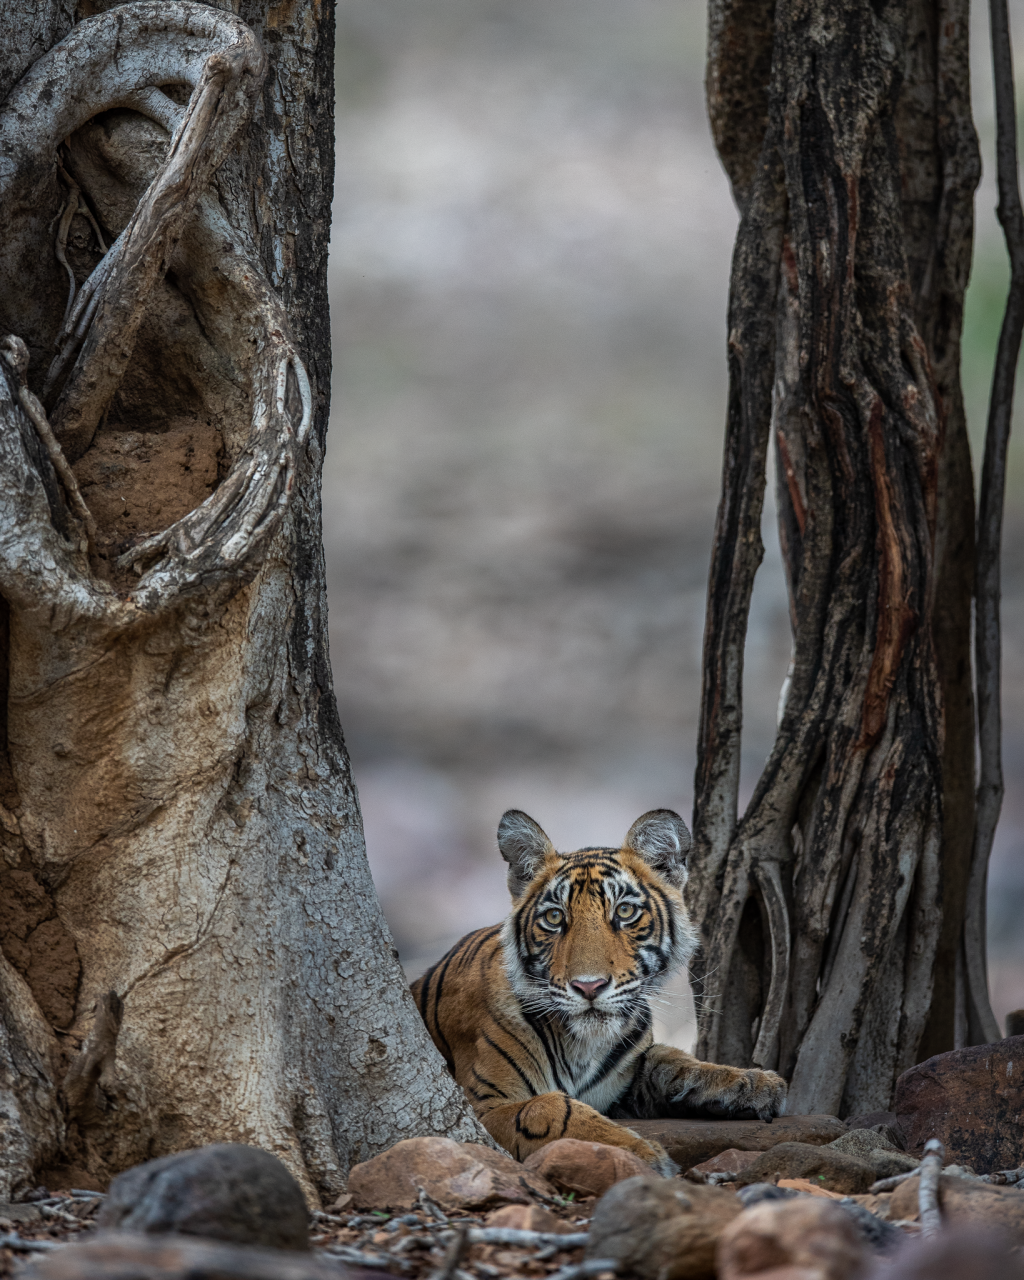 Tiger under tree